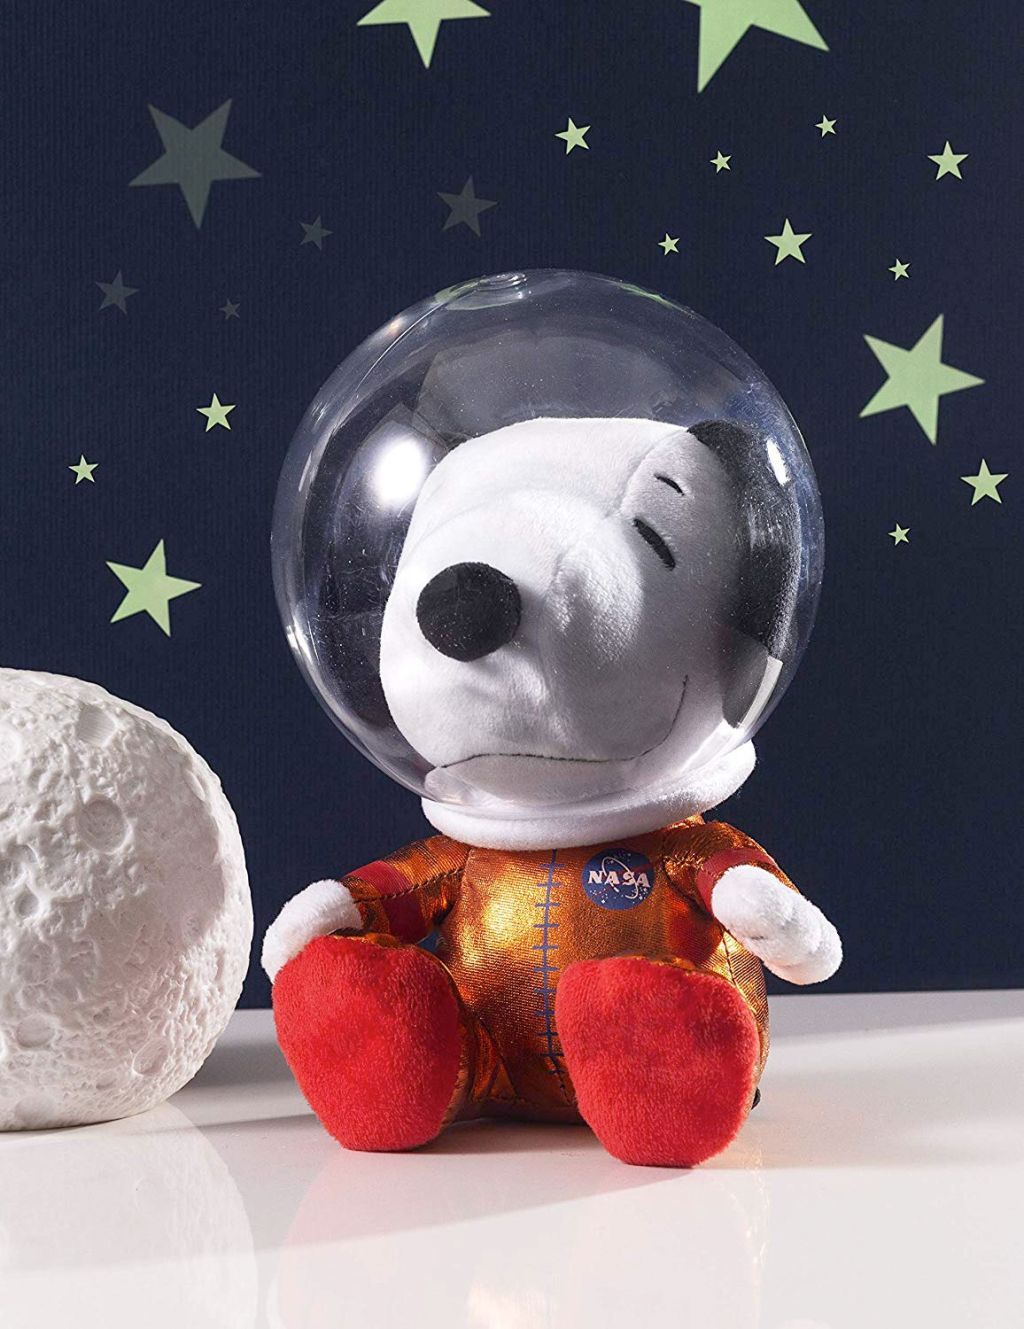 Hallmark's Astronaut Snoopy Is 50% Off on Amazon